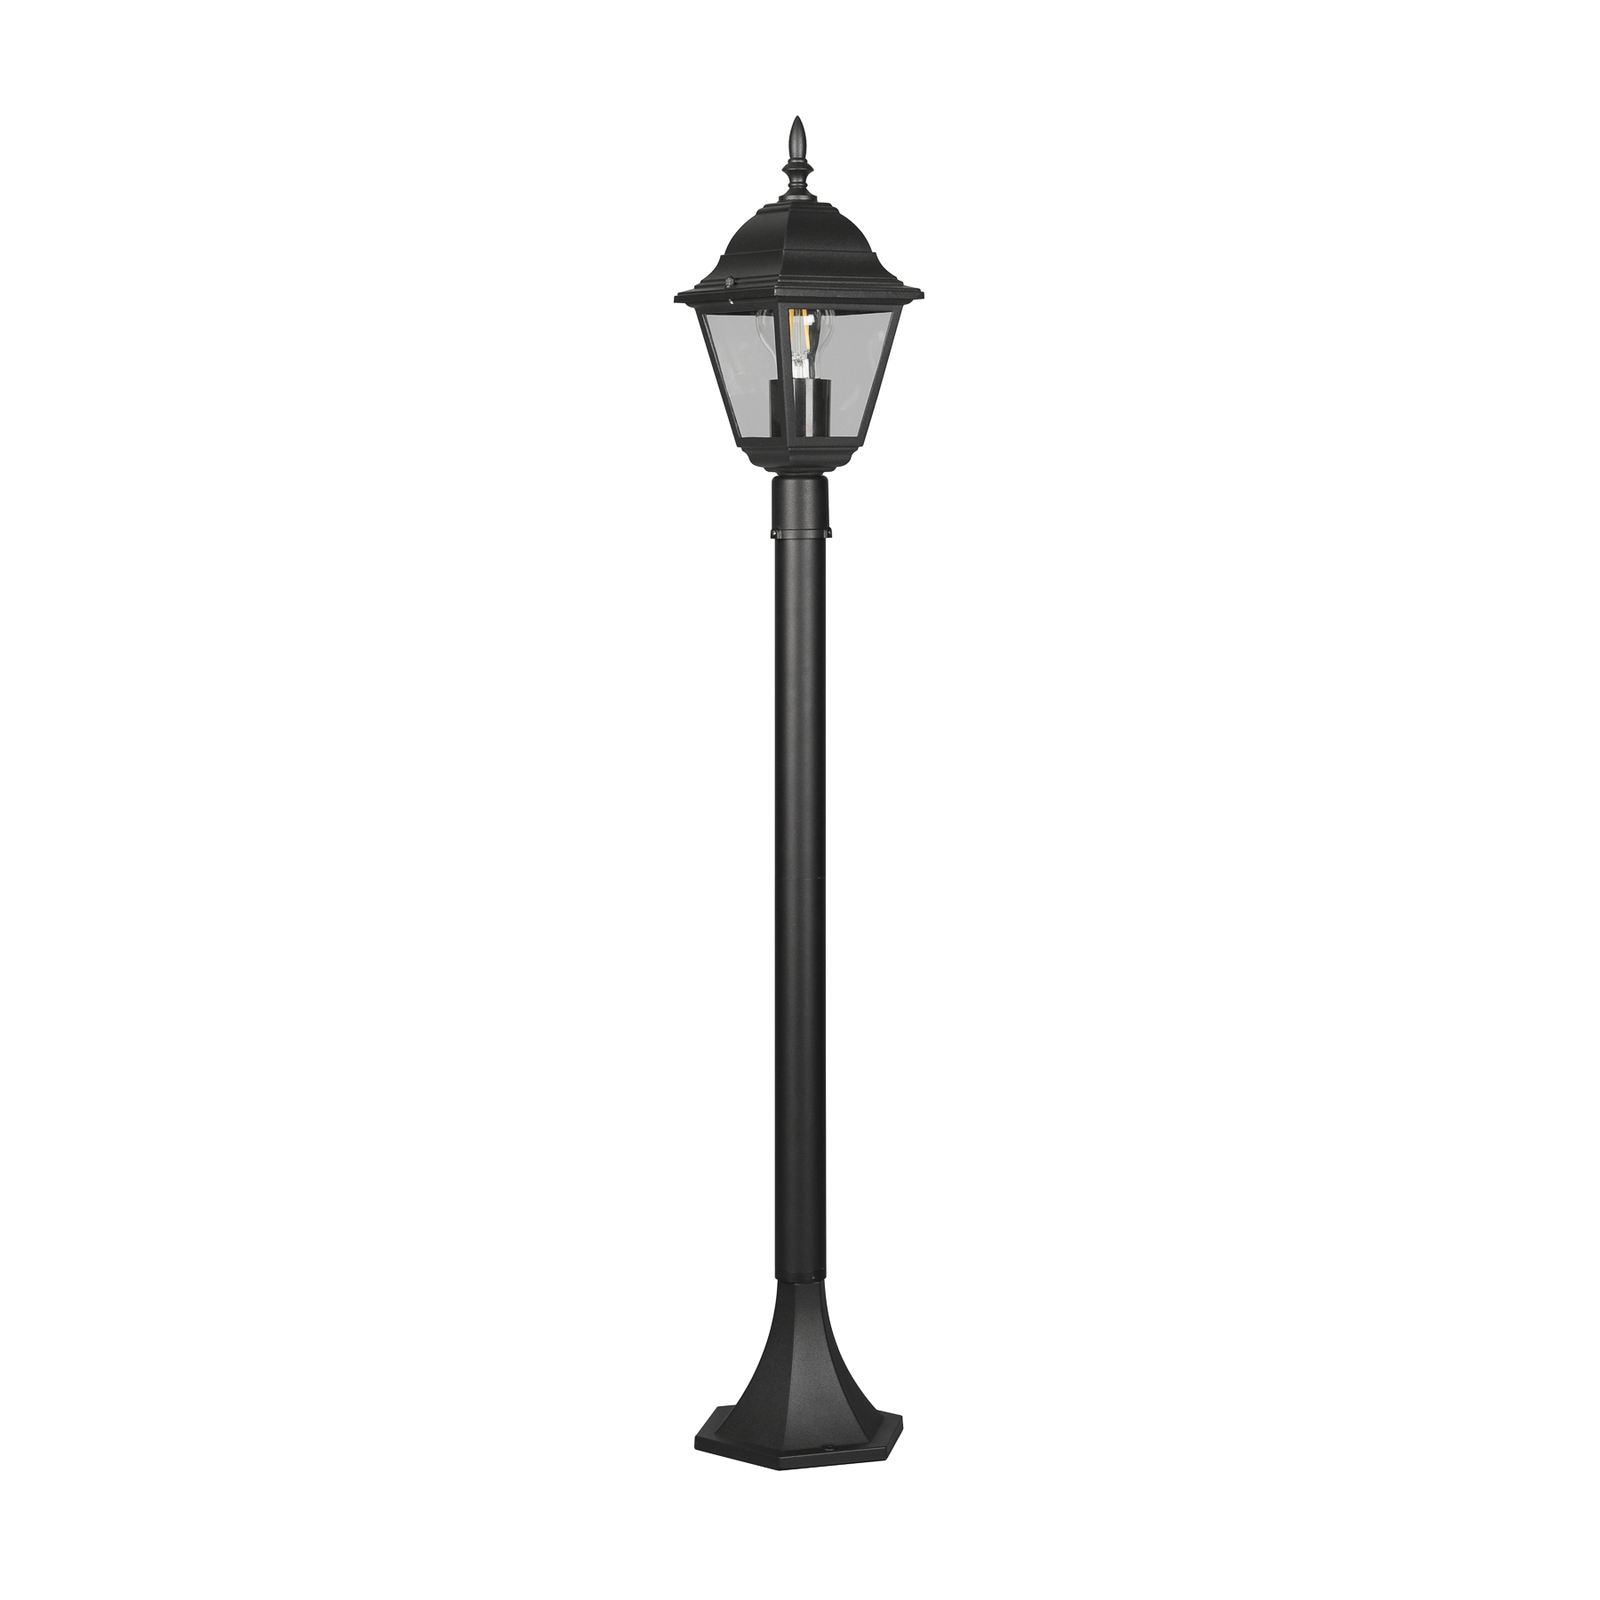 Borne lumineuse Livenza, noir, hauteur 100 cm, aluminium, IP44